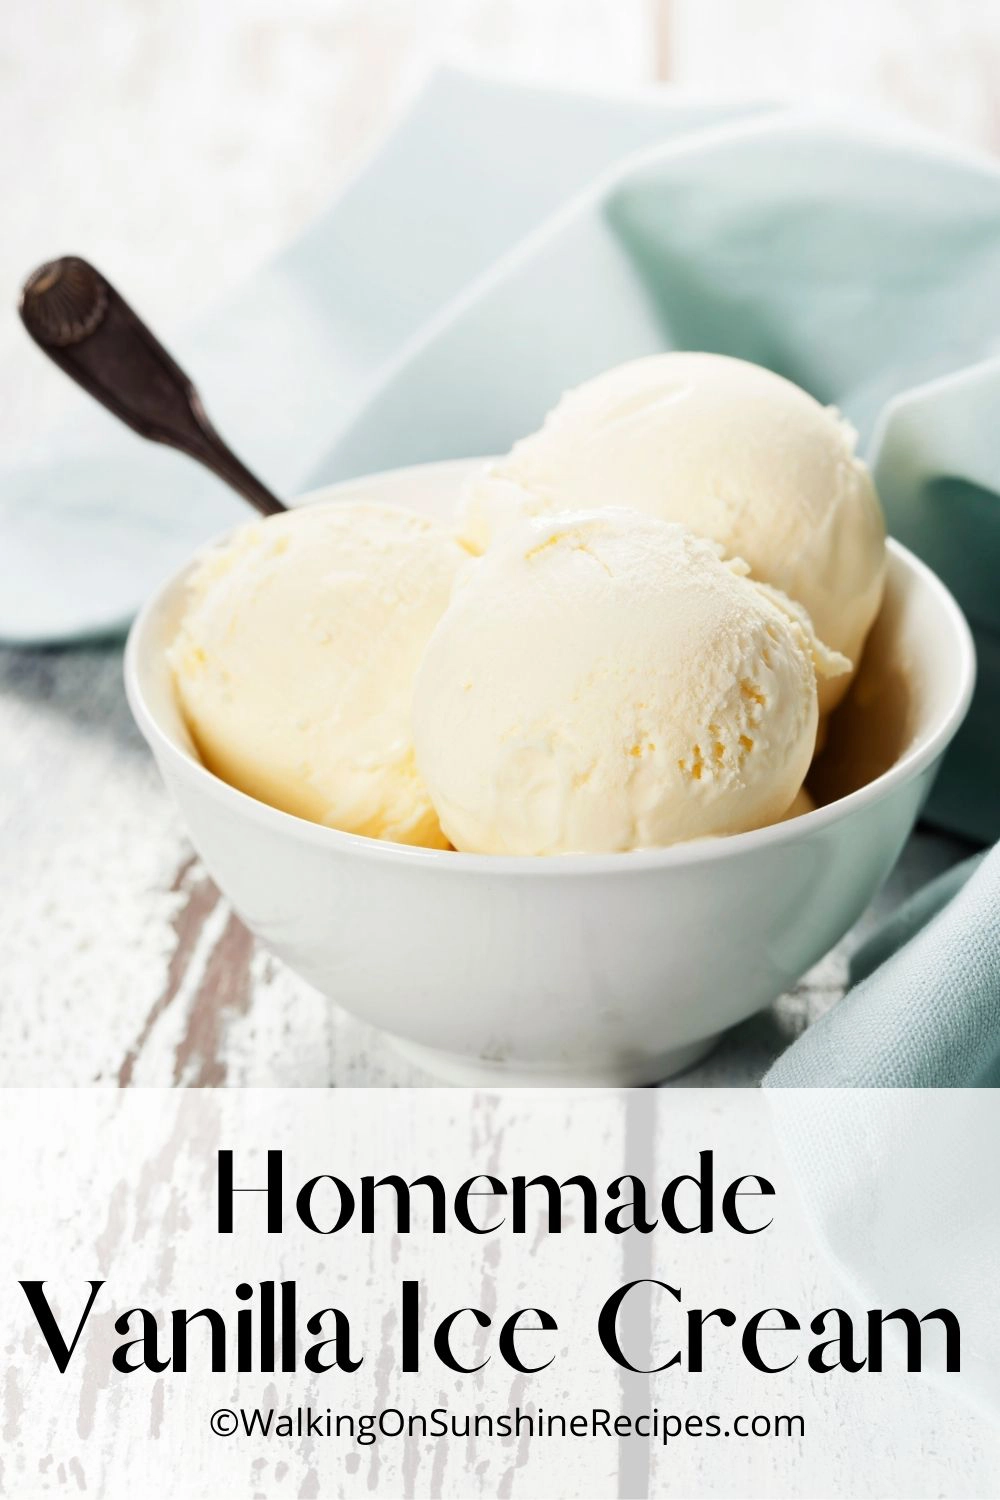 4 quart ice cream maker recipe for vanilla ice cream. 